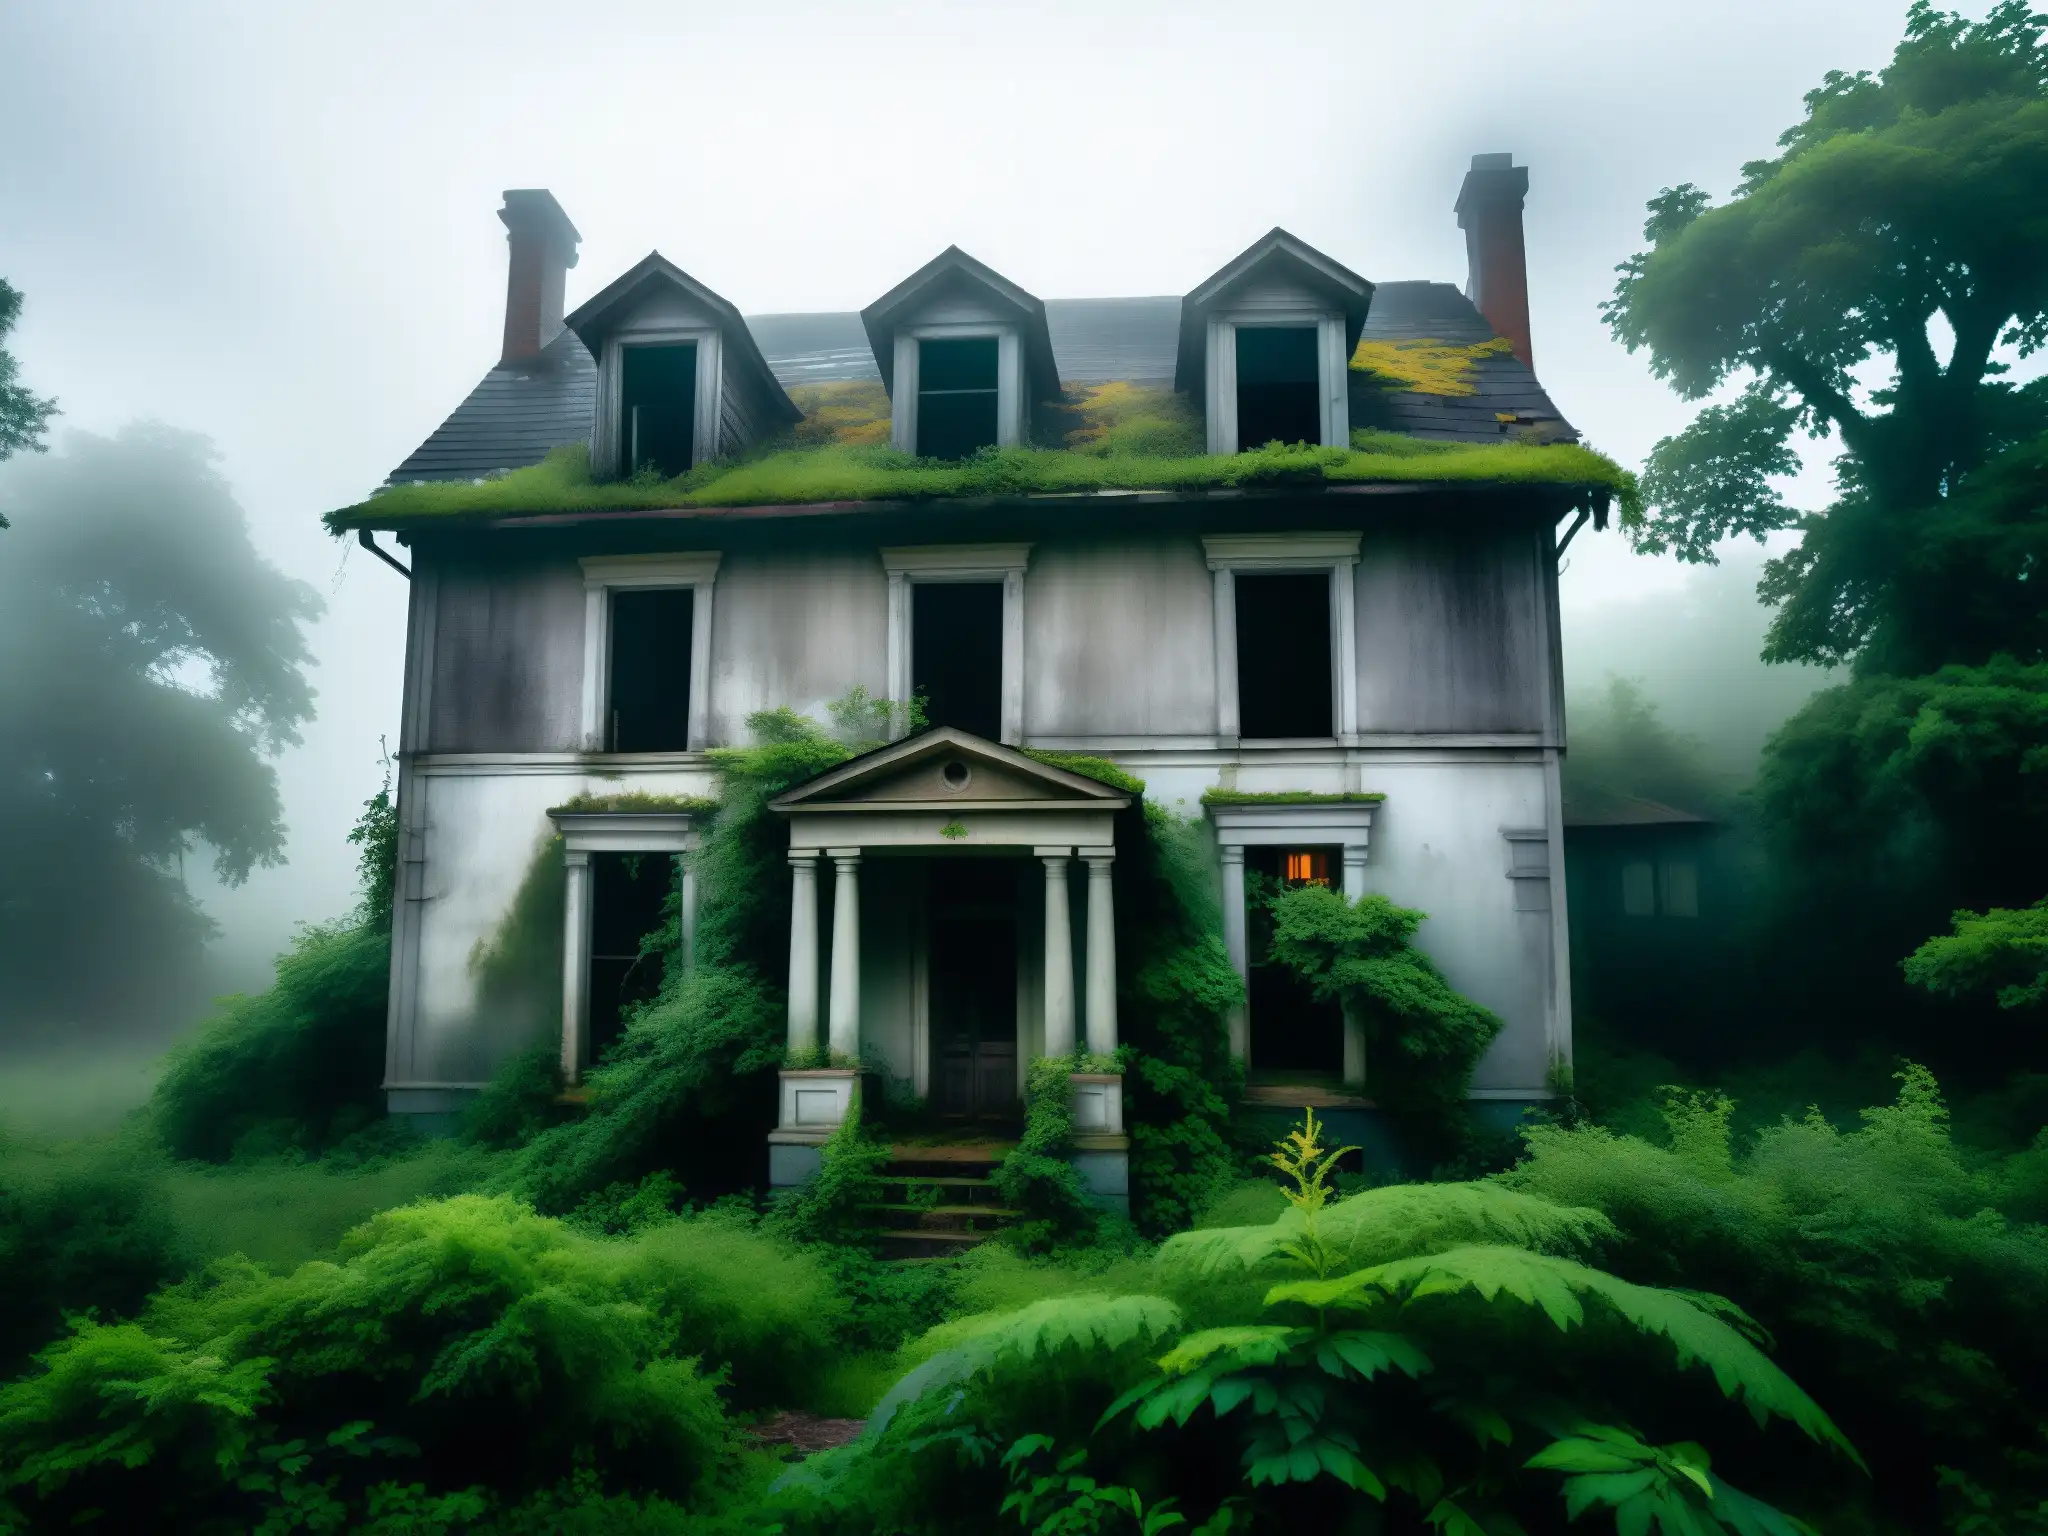 Una casa abandonada envuelta en niebla y vegetación exuberante, evocando el misterio del fenómeno casa embrujada